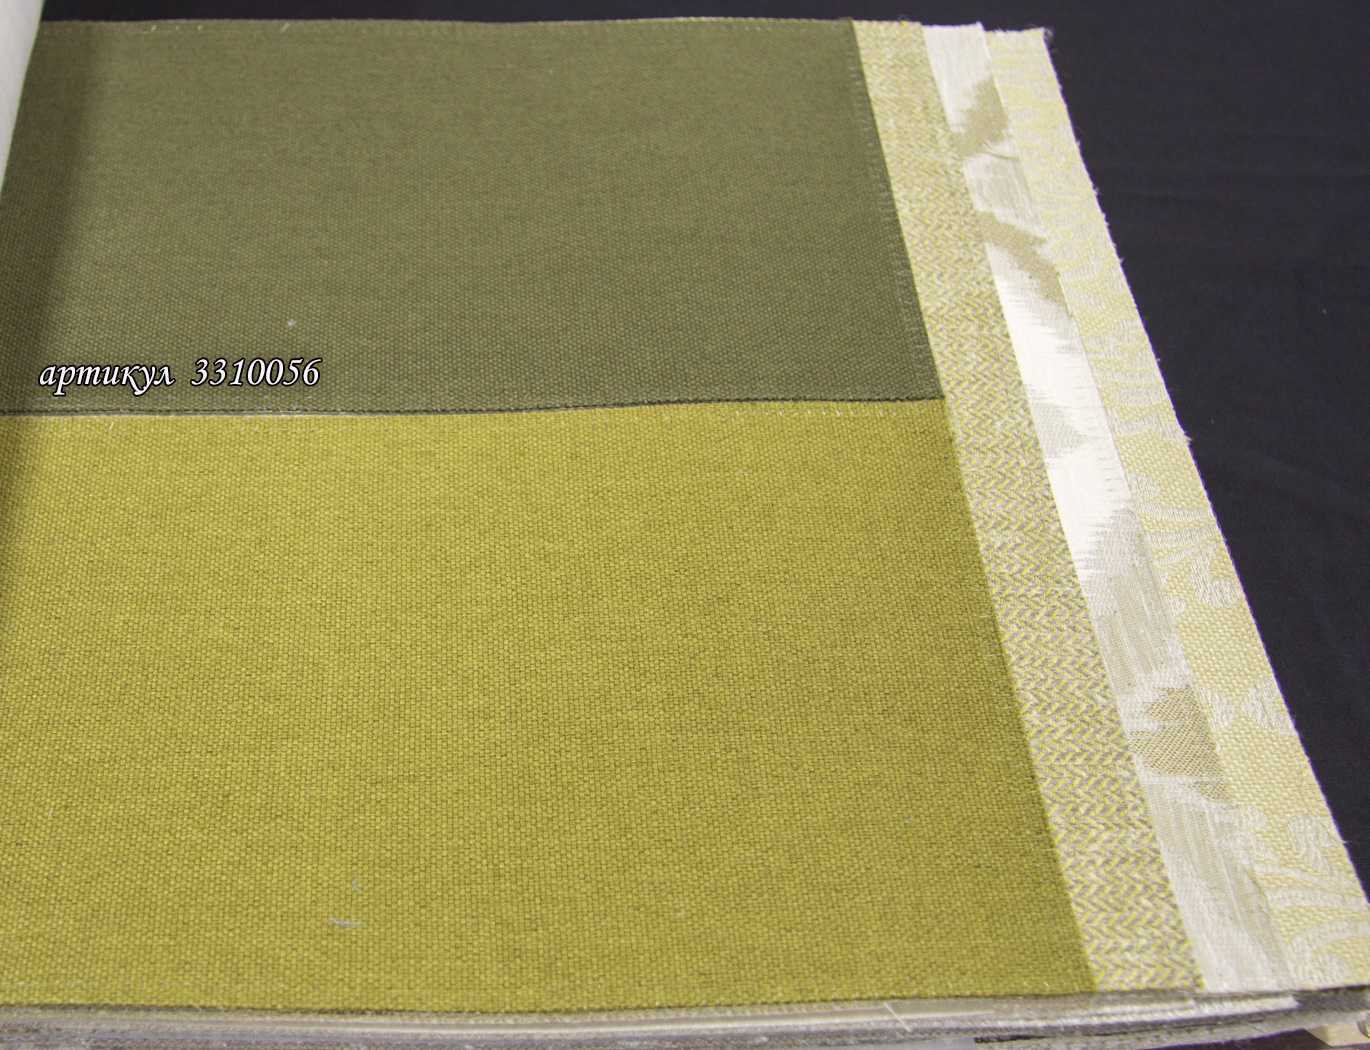 Трикотаж — описание ткани, состав, свойства, достоинства и недостатки